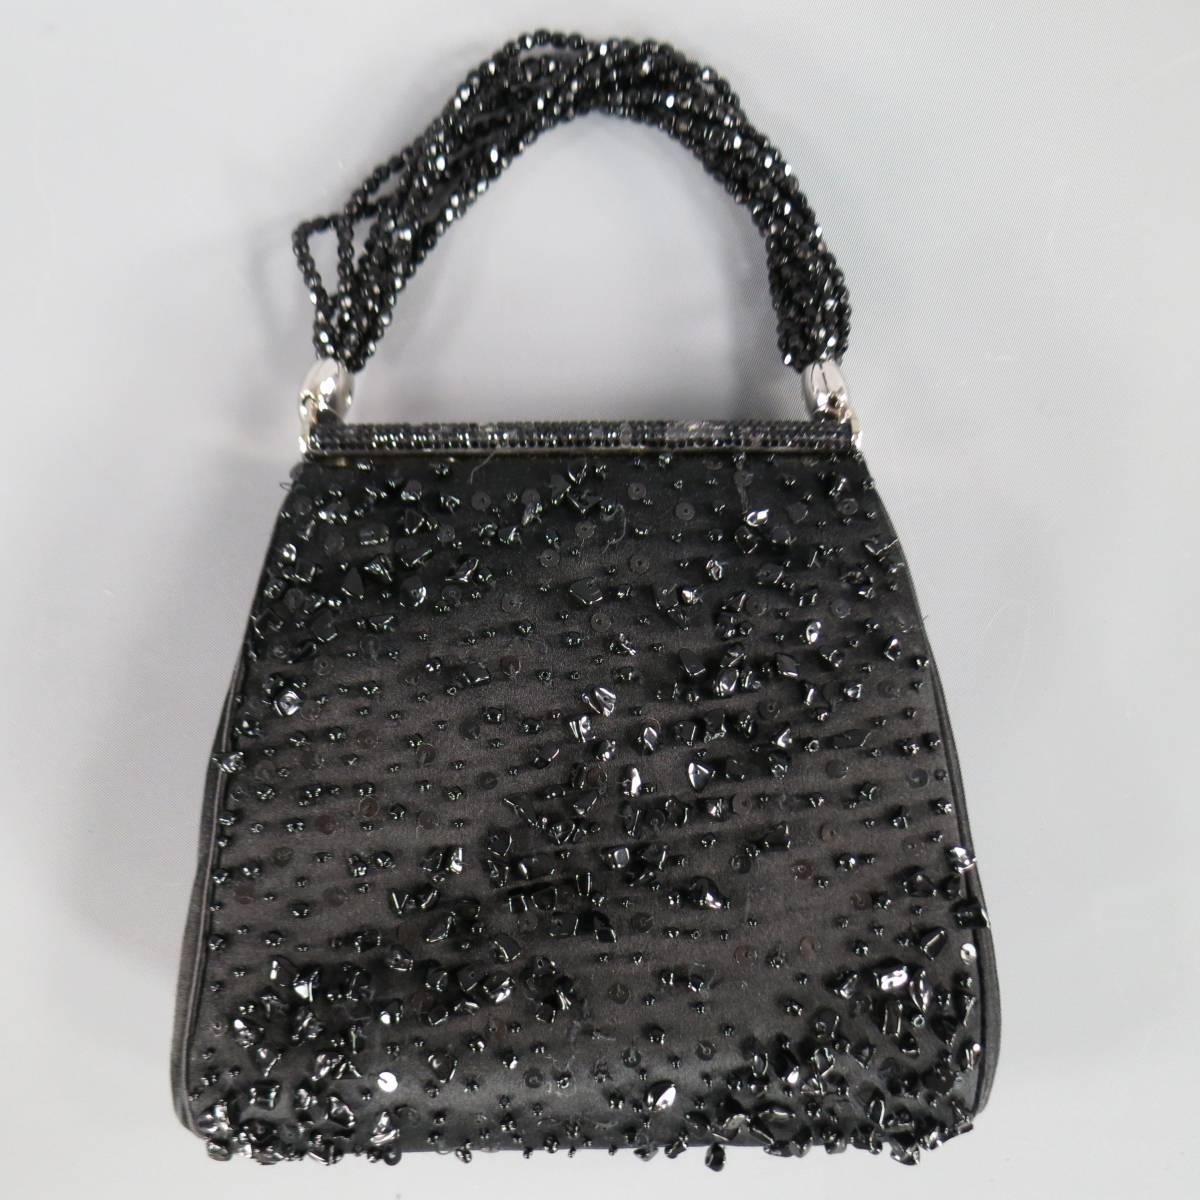 Vintage JUDITH LEIBER Black Beaded Satin Evening Handbag 1